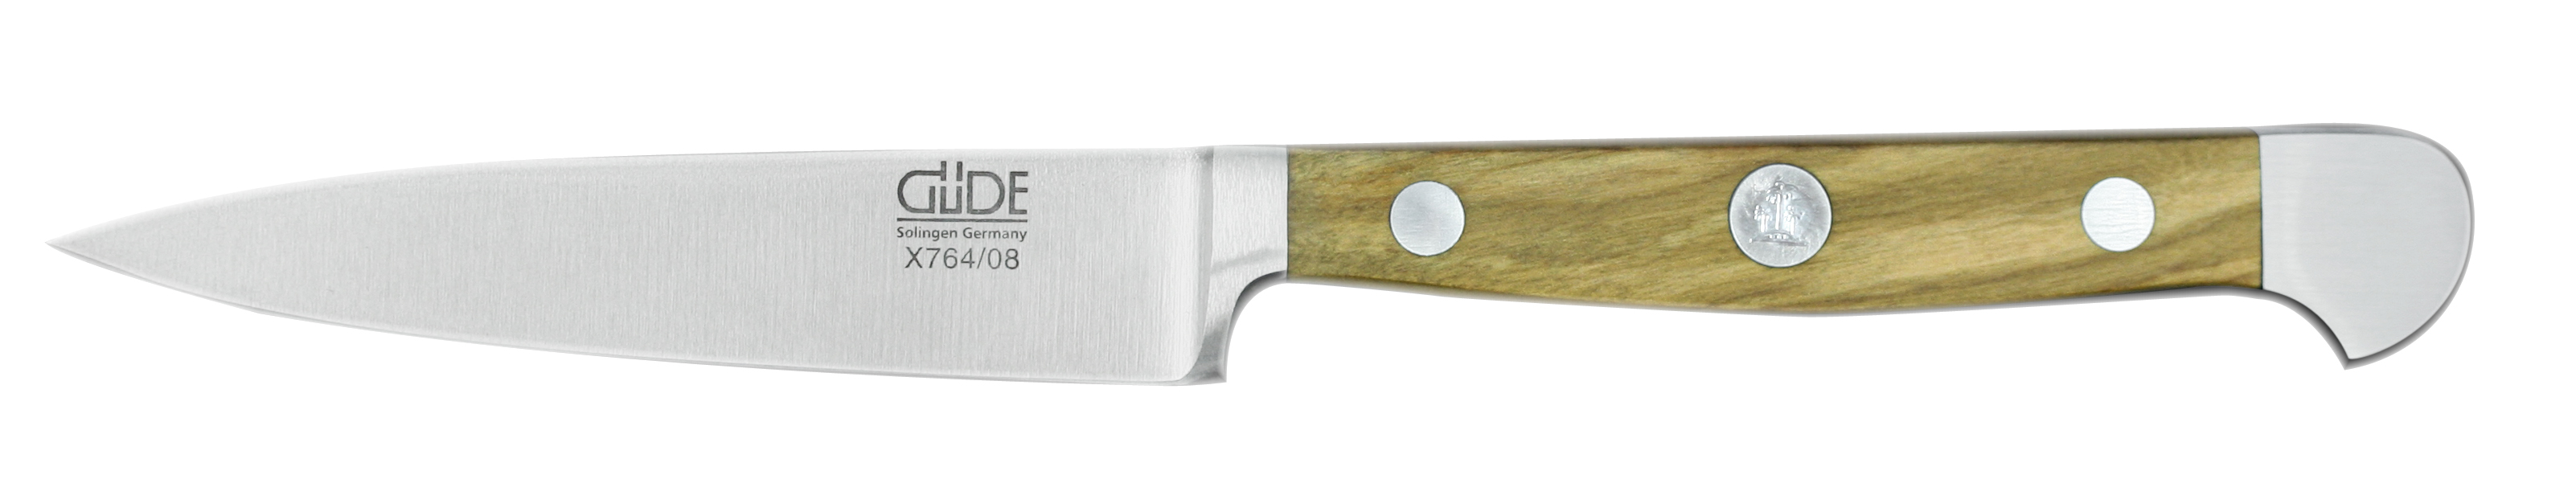 Güde Alpha Olive Spickmesser 8 cm / CVM-Messerstahl mit Griffschalen aus Olivenholz